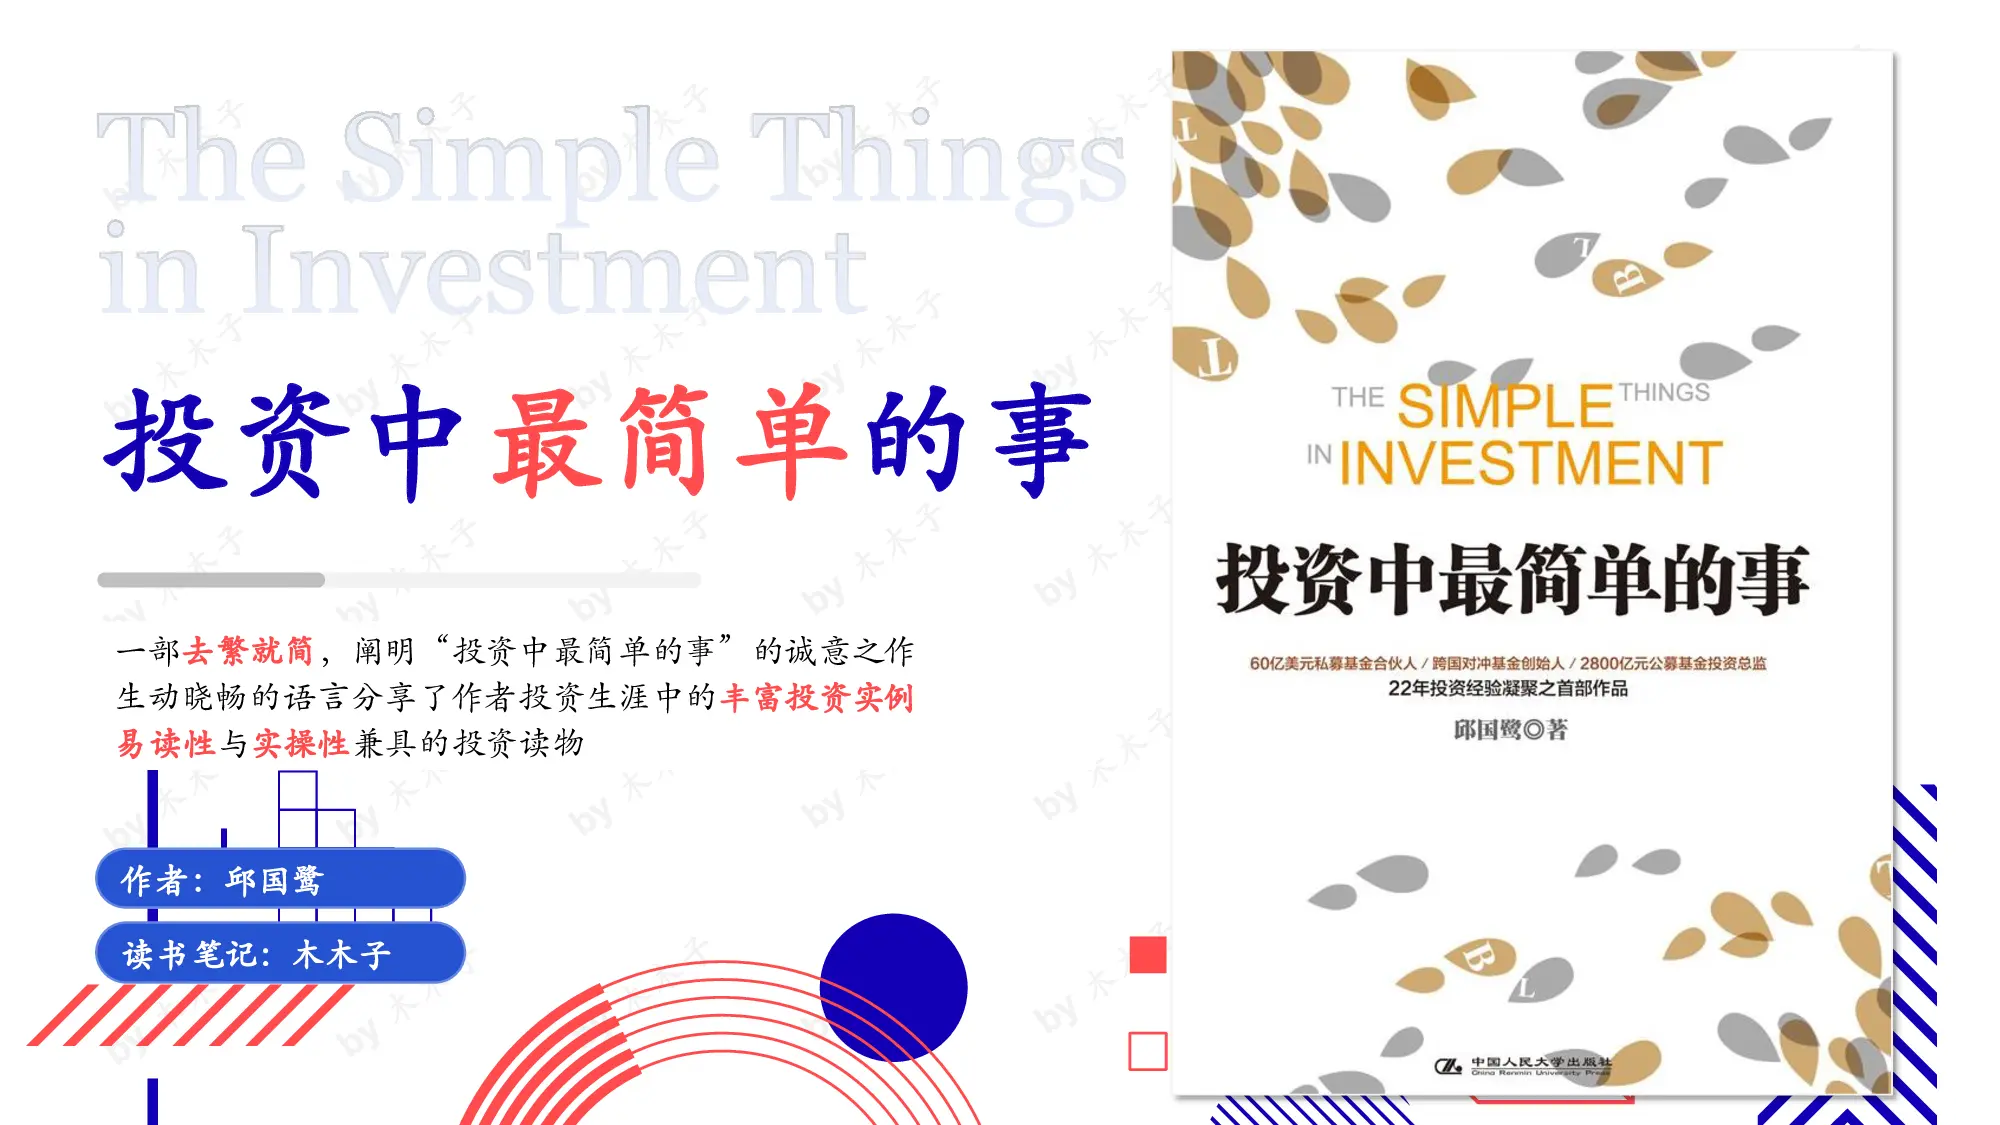 《投资中最简单的事》PDF读书笔记插图1